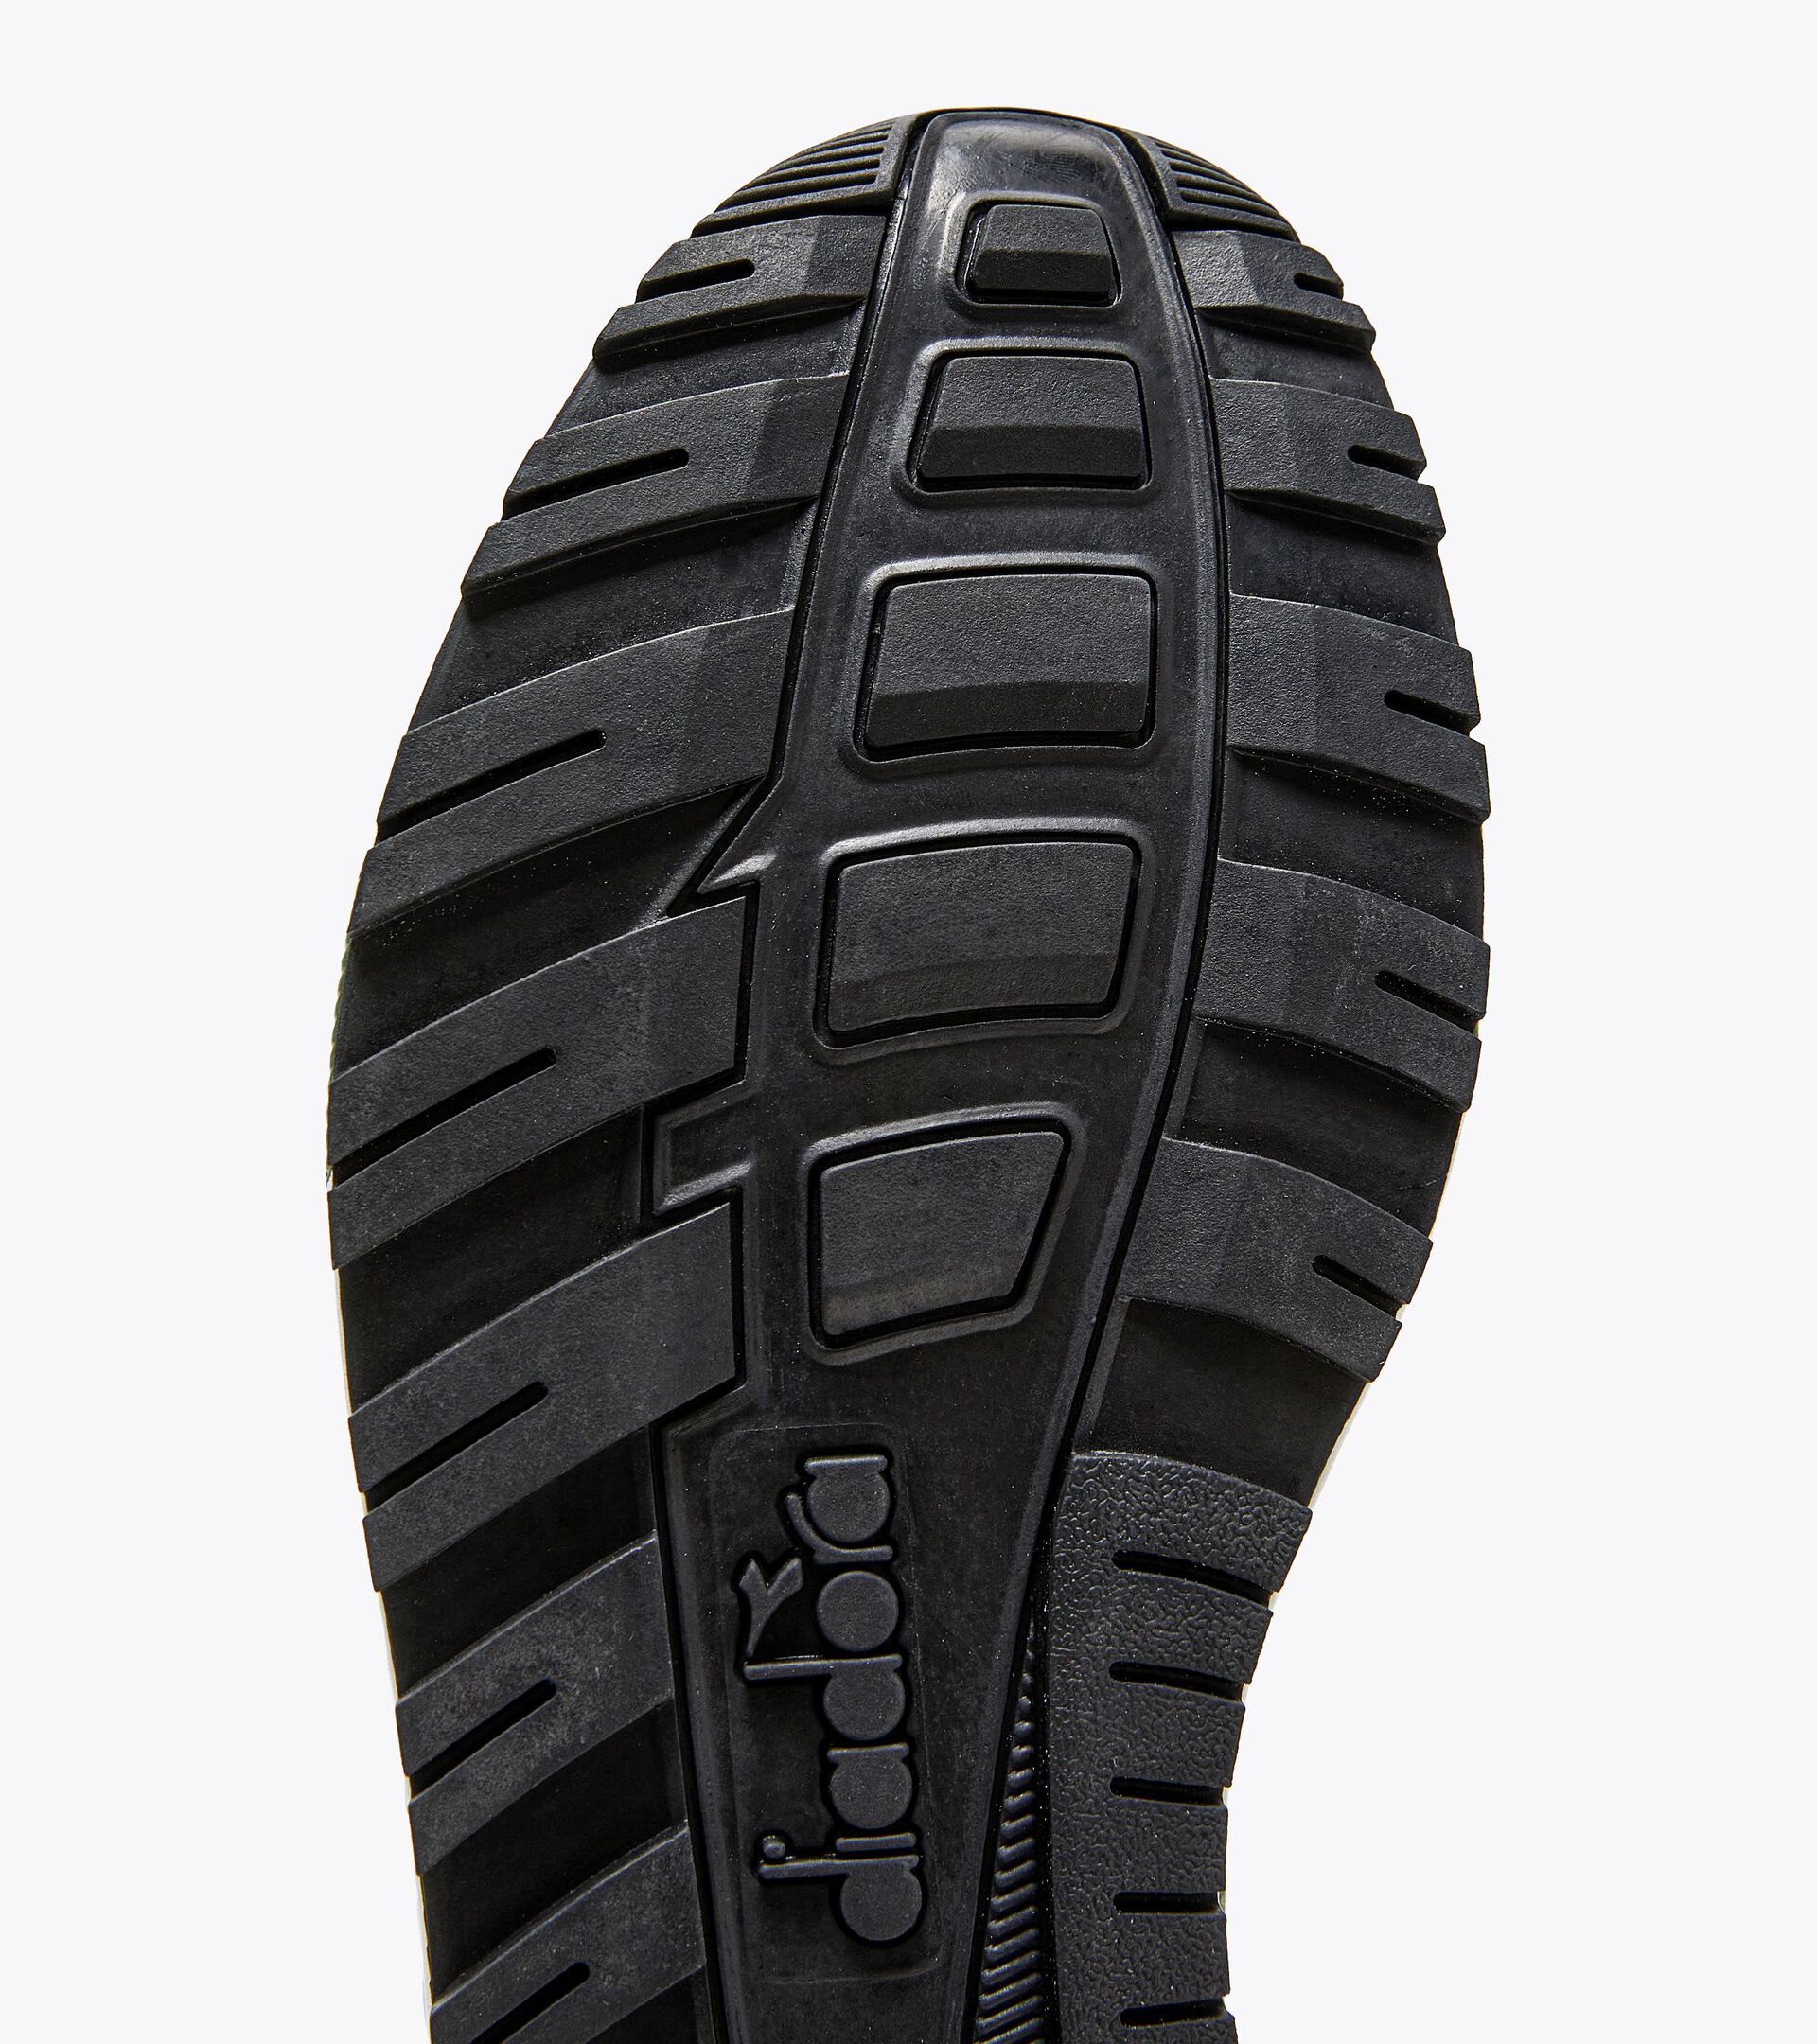 N902 Sporty sneakers - Gender neutral - Diadora Online Store US